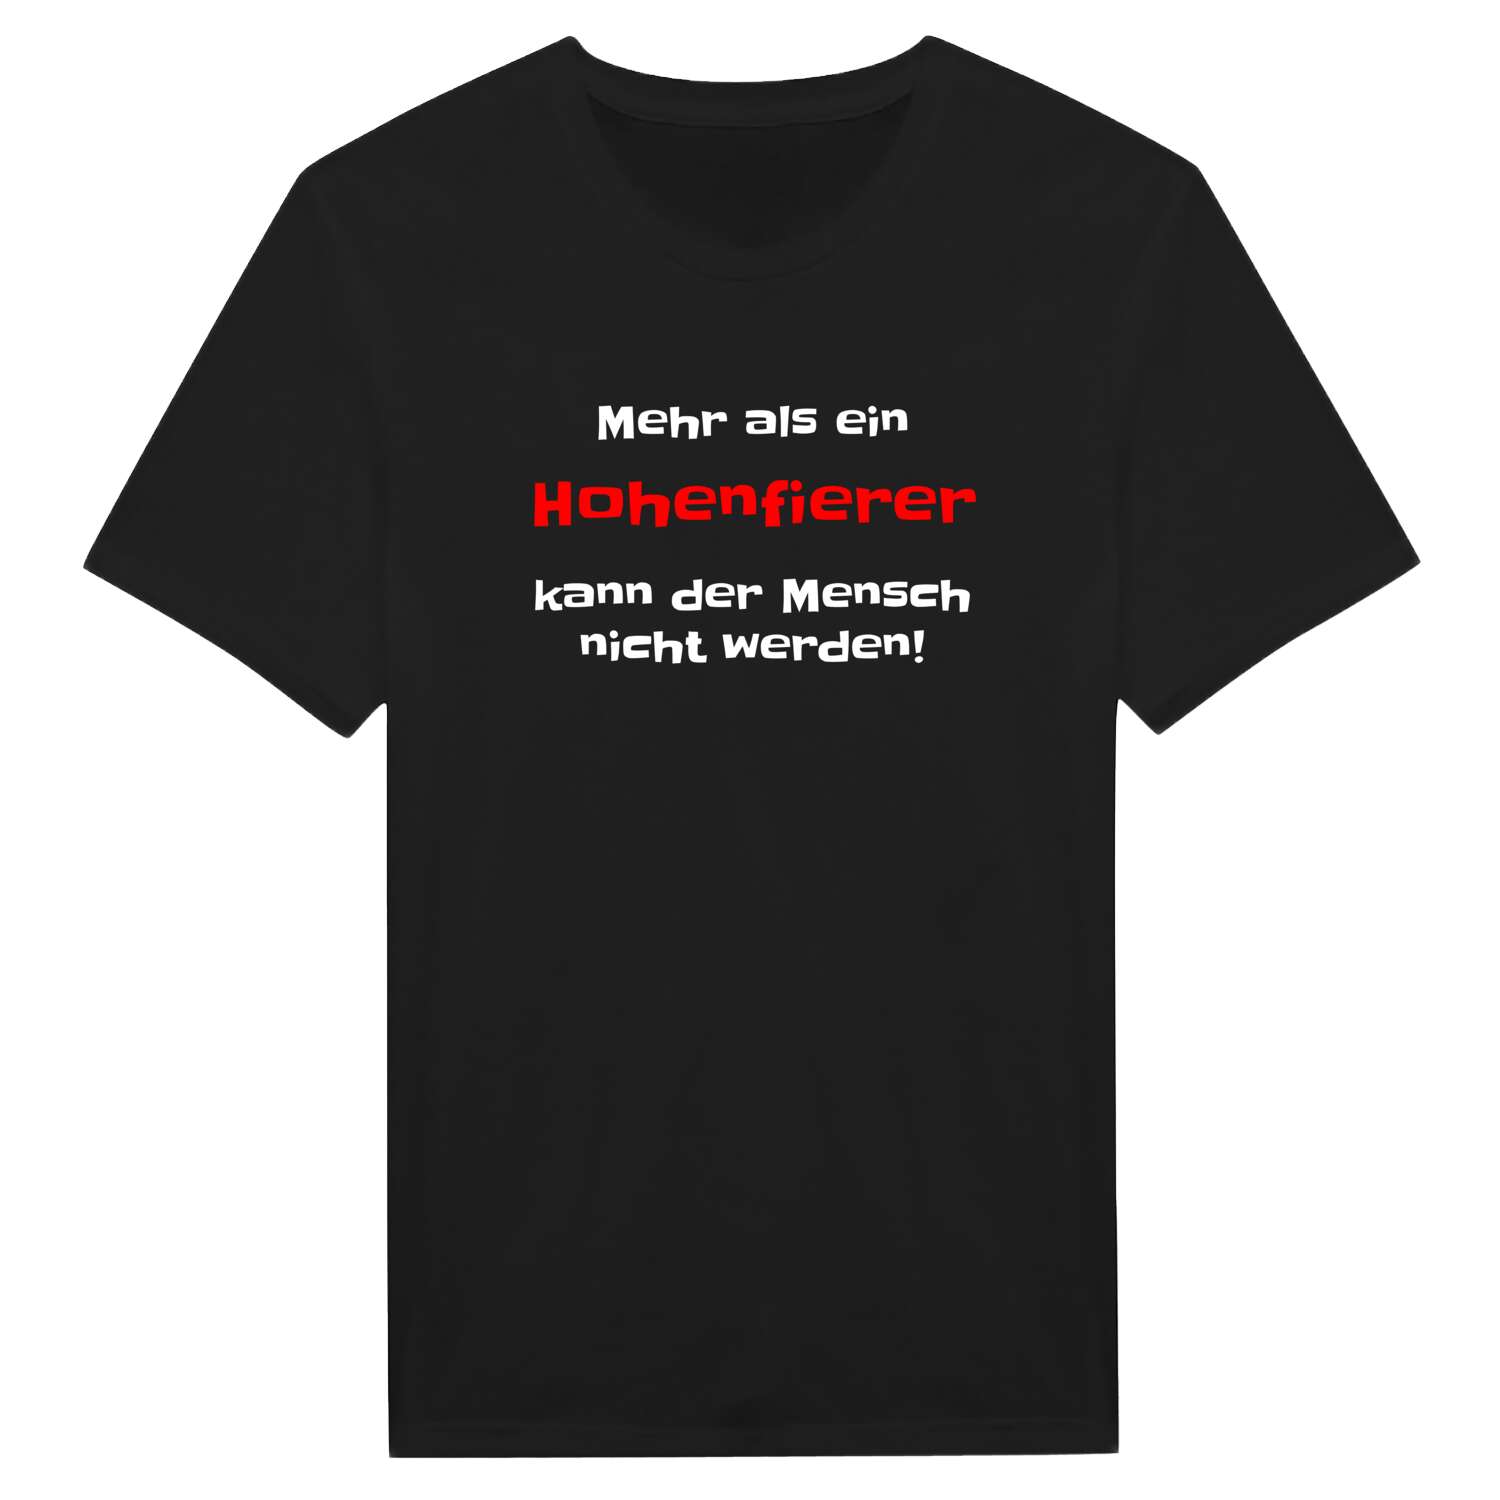 Hohenfier T-Shirt »Mehr als ein«